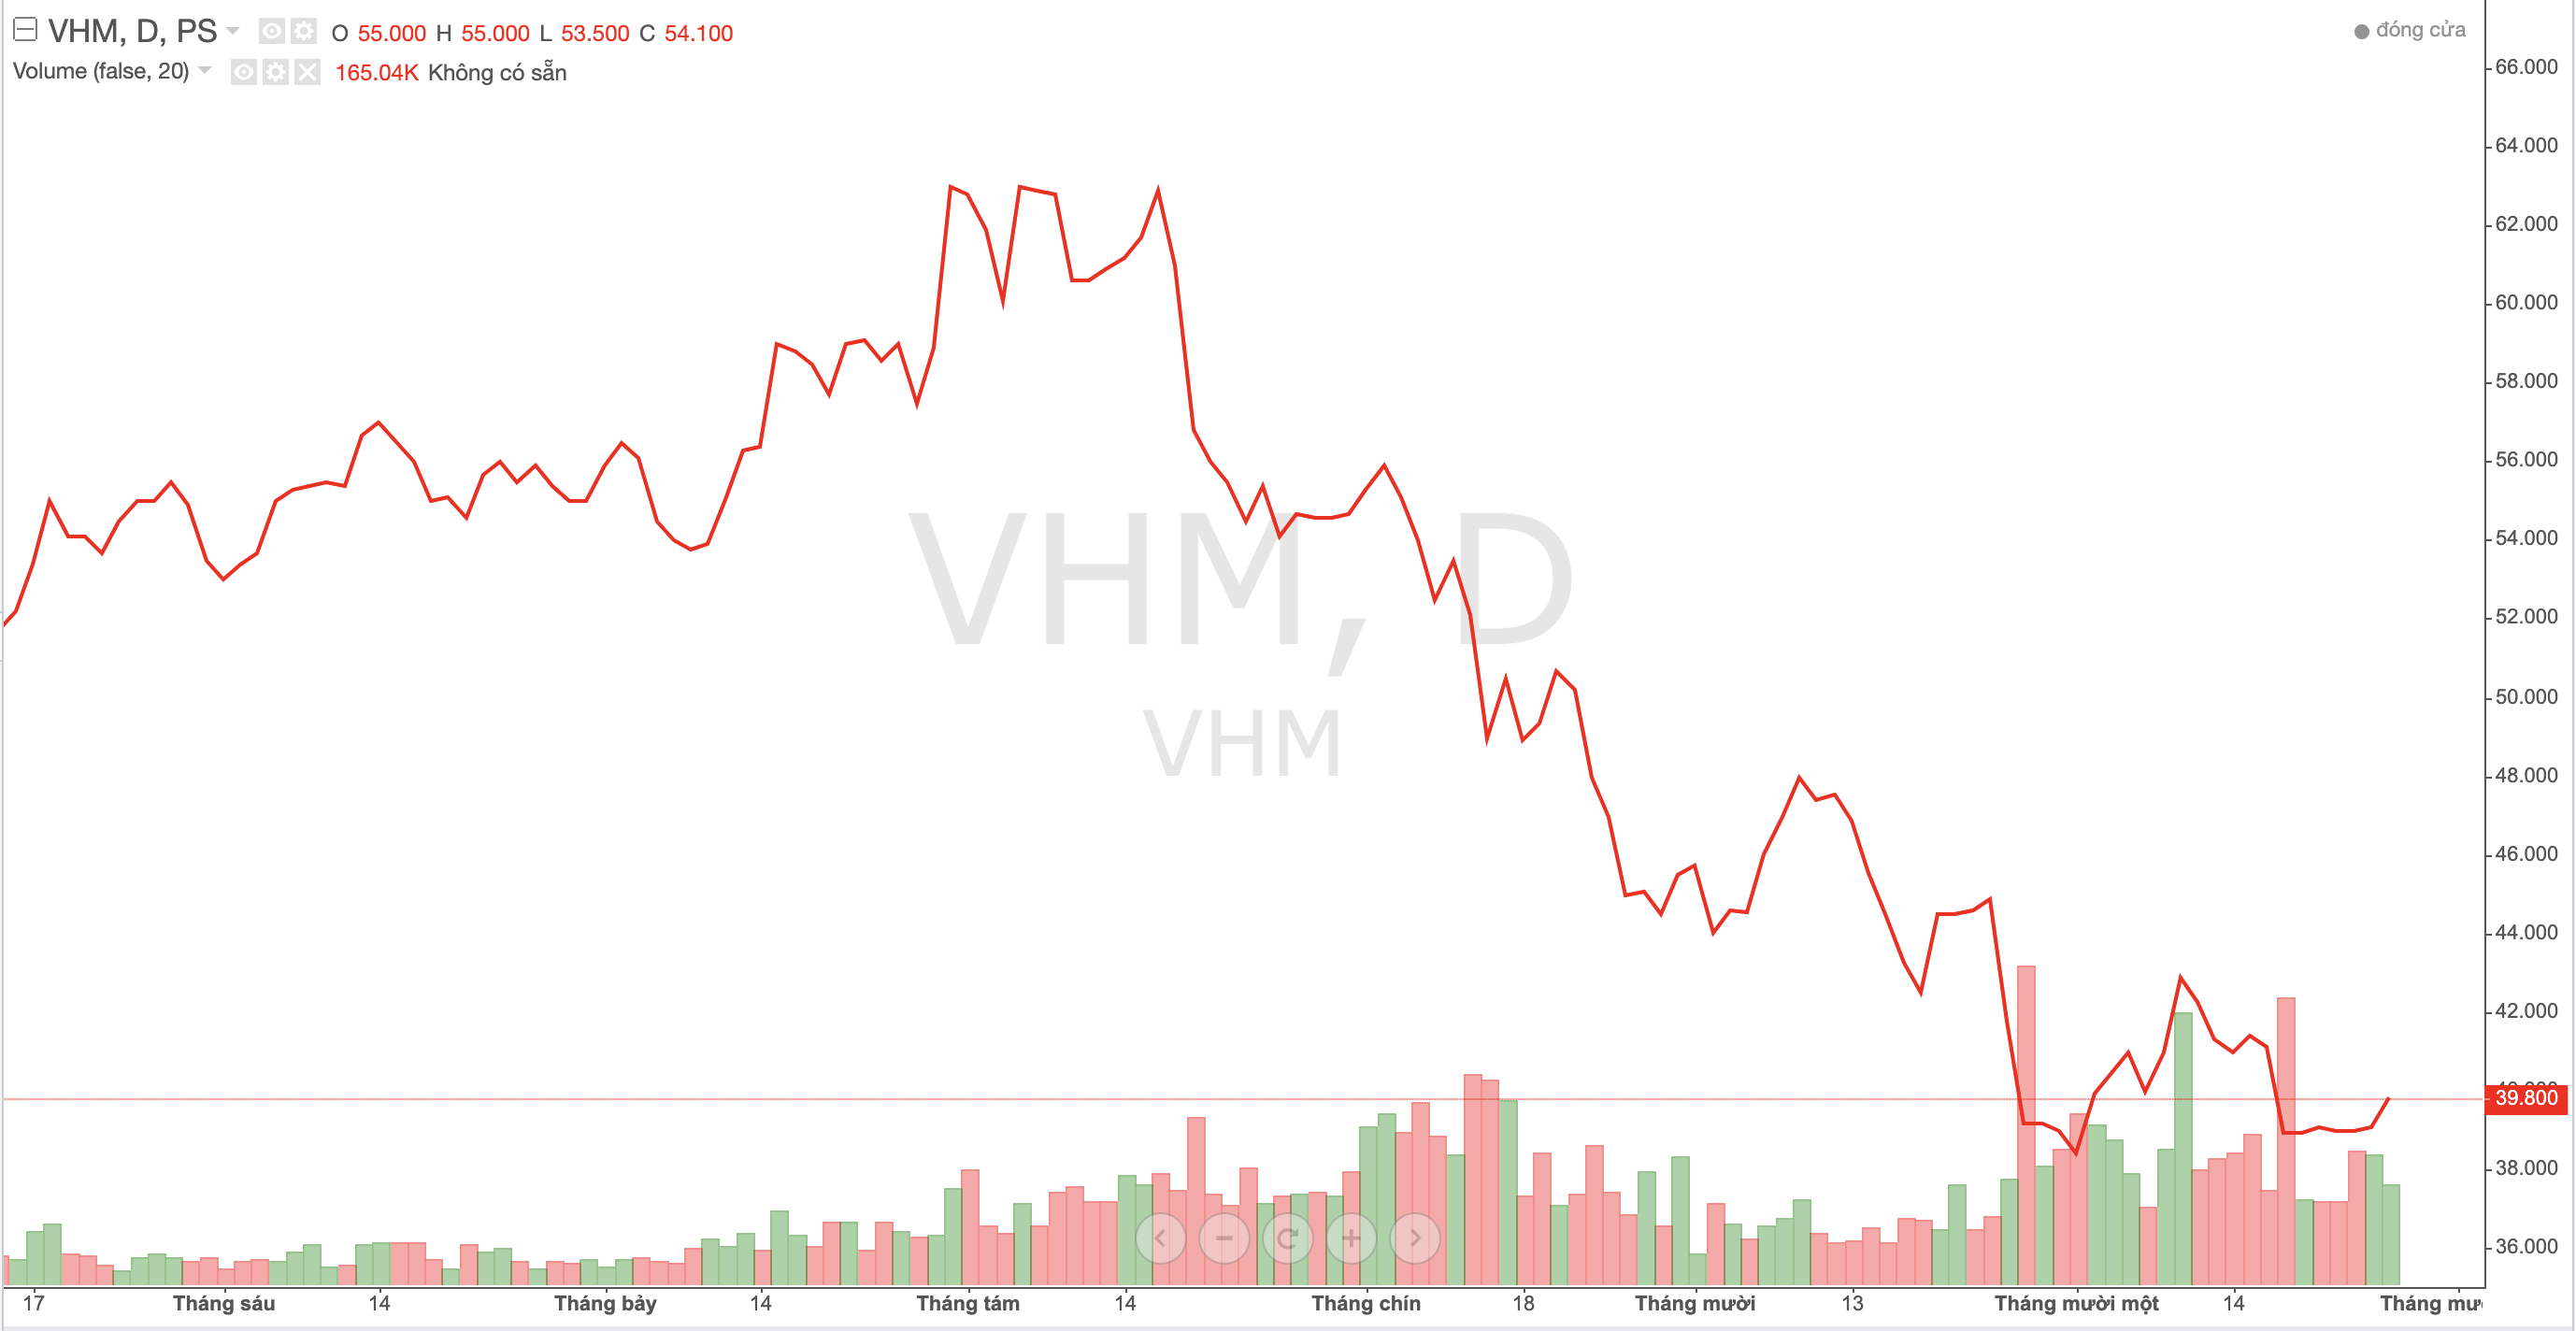 Vinhomes thành công phát hành 2.000 tỷ đồng trái phiếu, bán Bất động sản SV Holding ngay sau khi rót thêm vốn 2